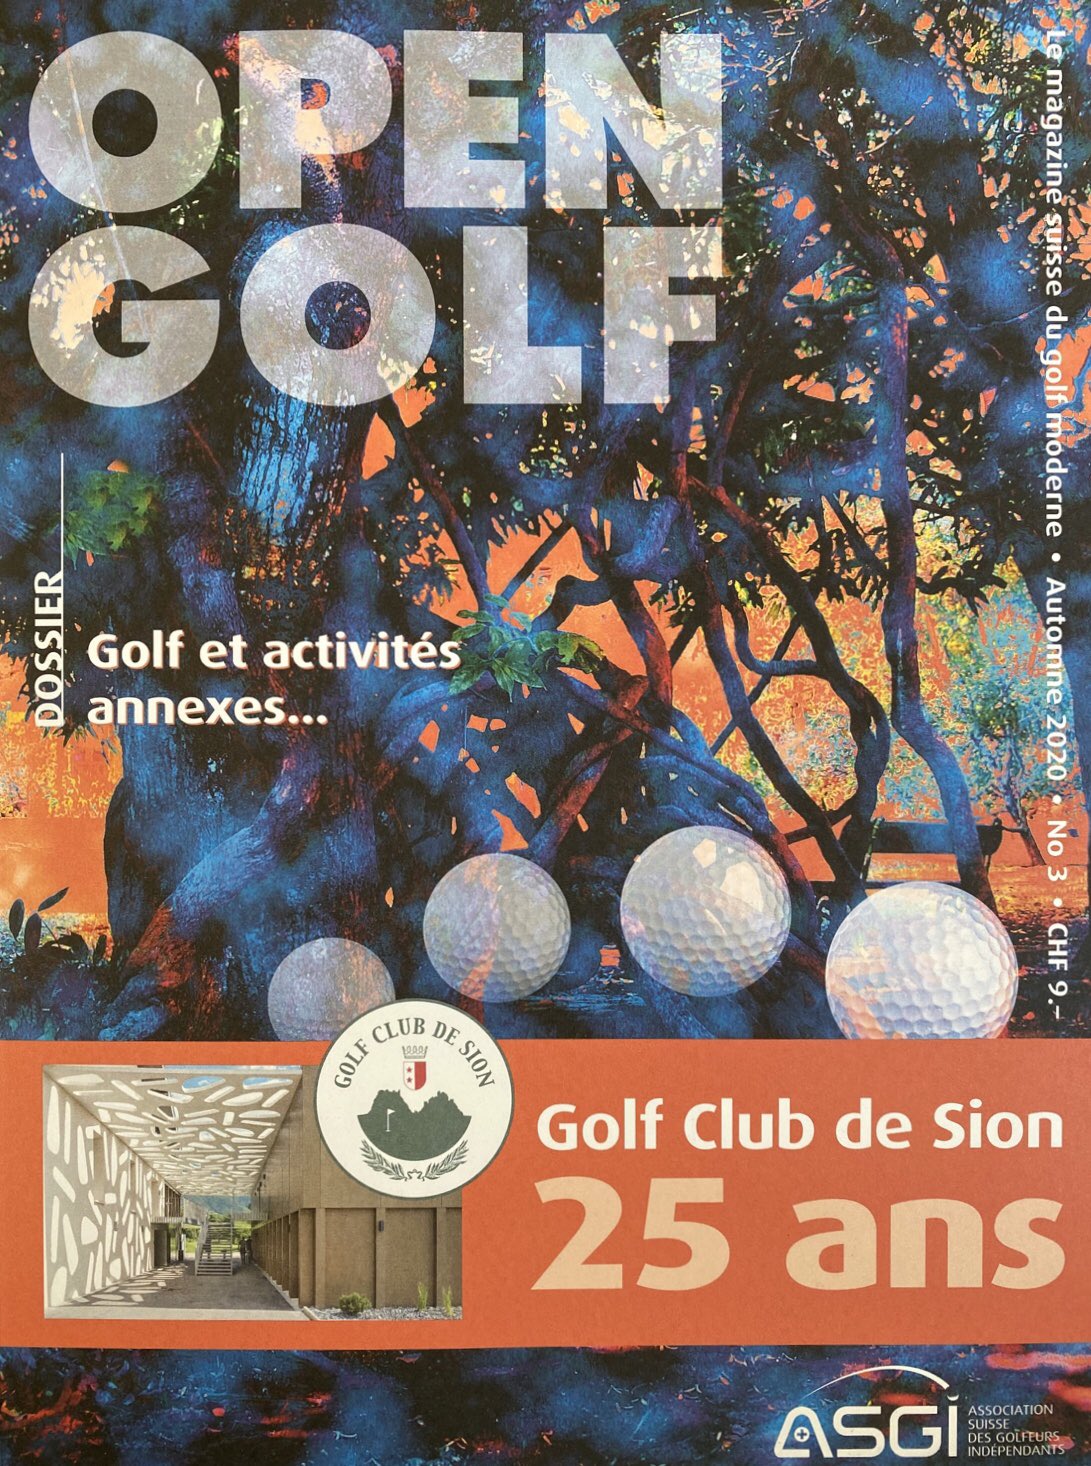 Golf Club de Sion (@GolfClubSion) / Twitter